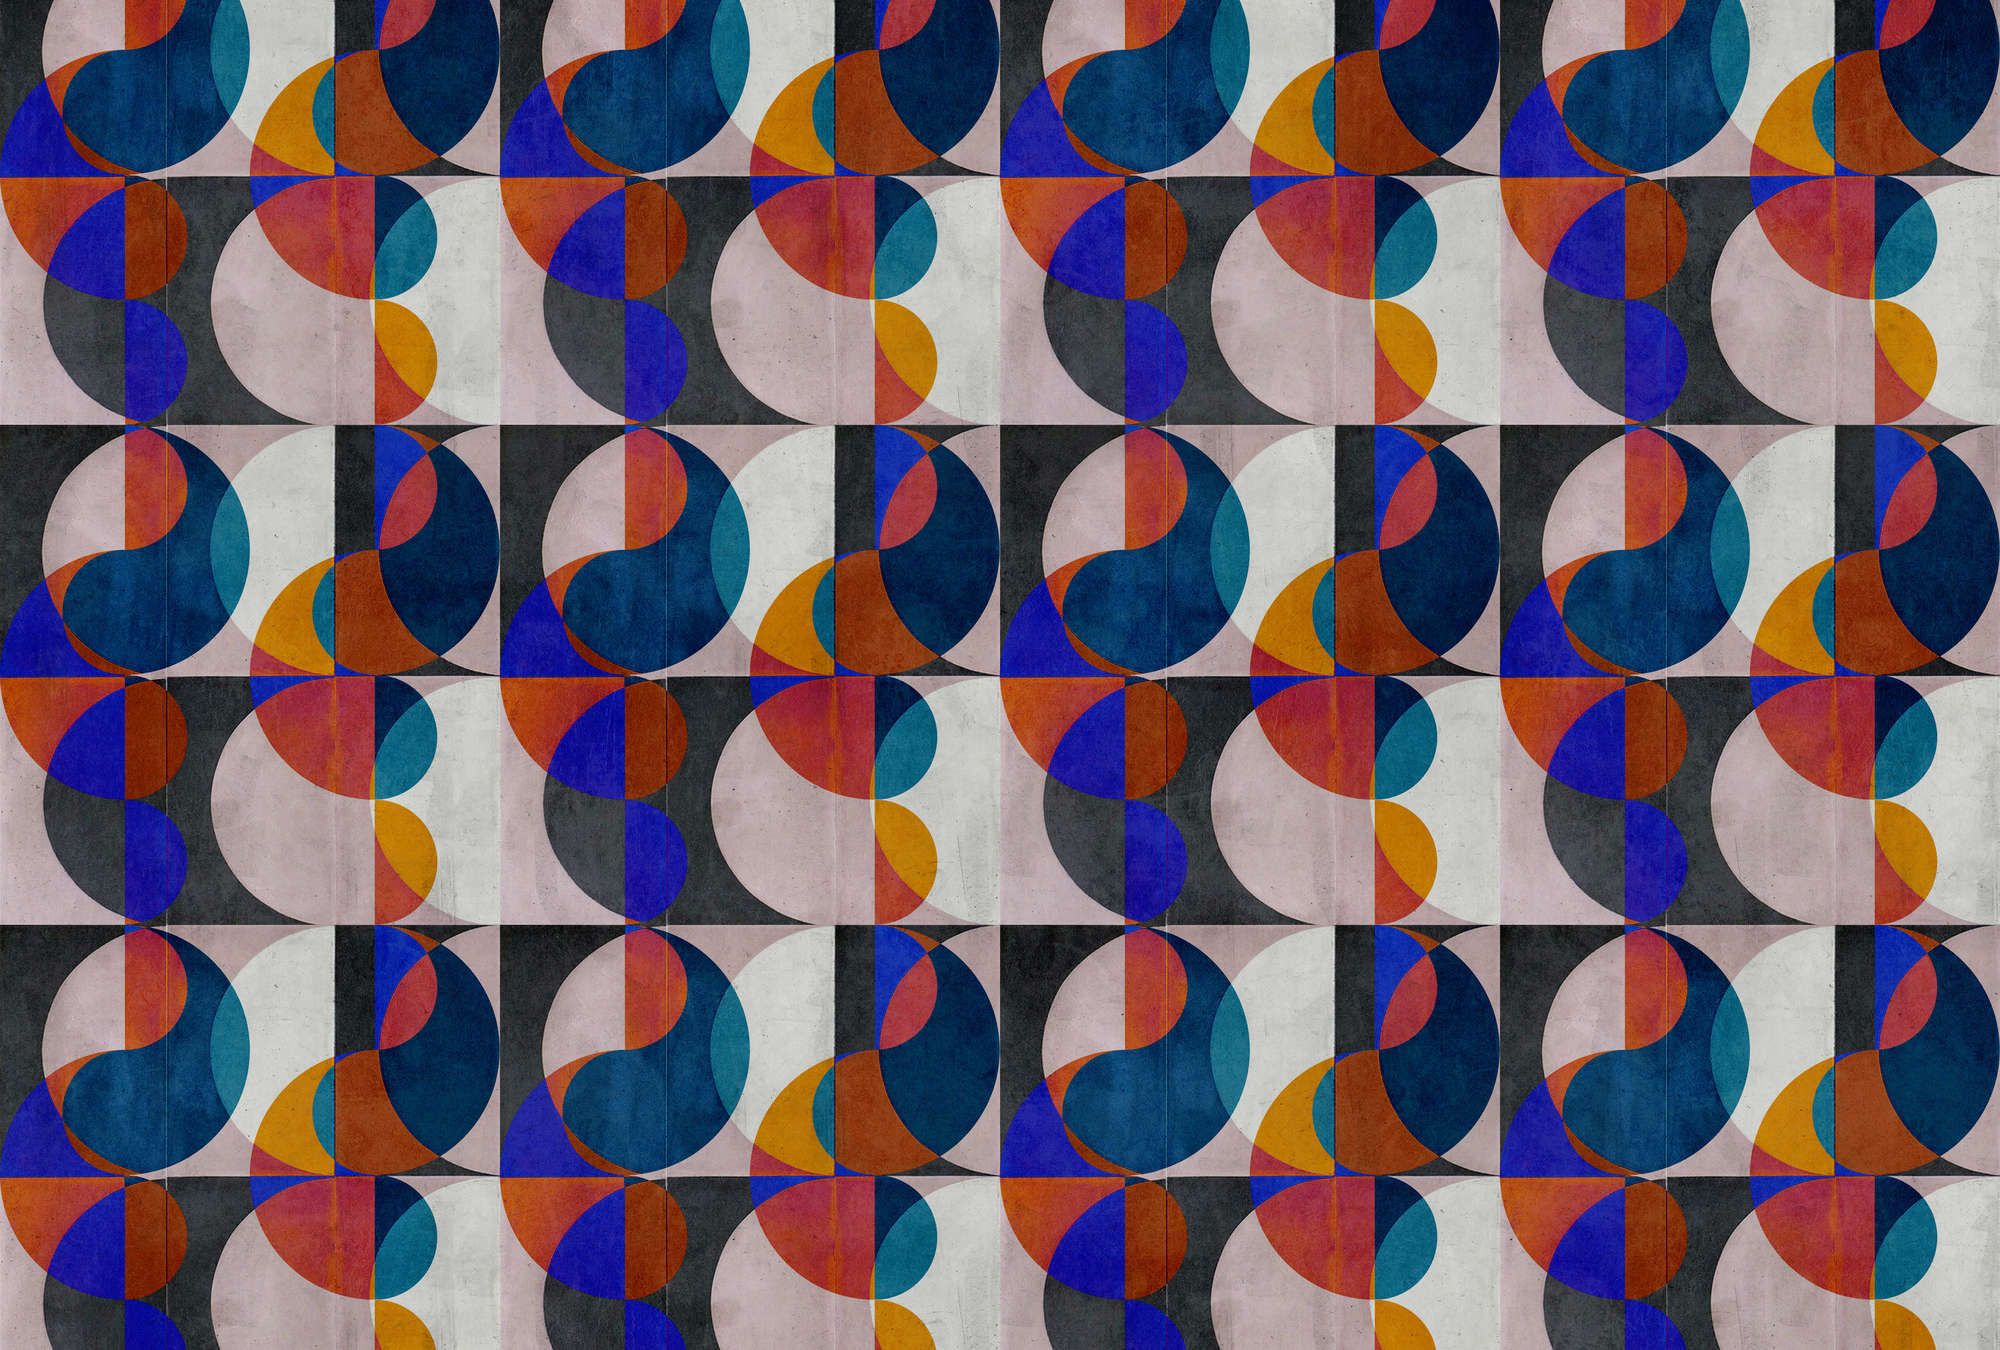             Fotomural »mia« - Motivo retro abstracto sobre textura de yeso de hormigón - colorido | mate, liso no tejido
        